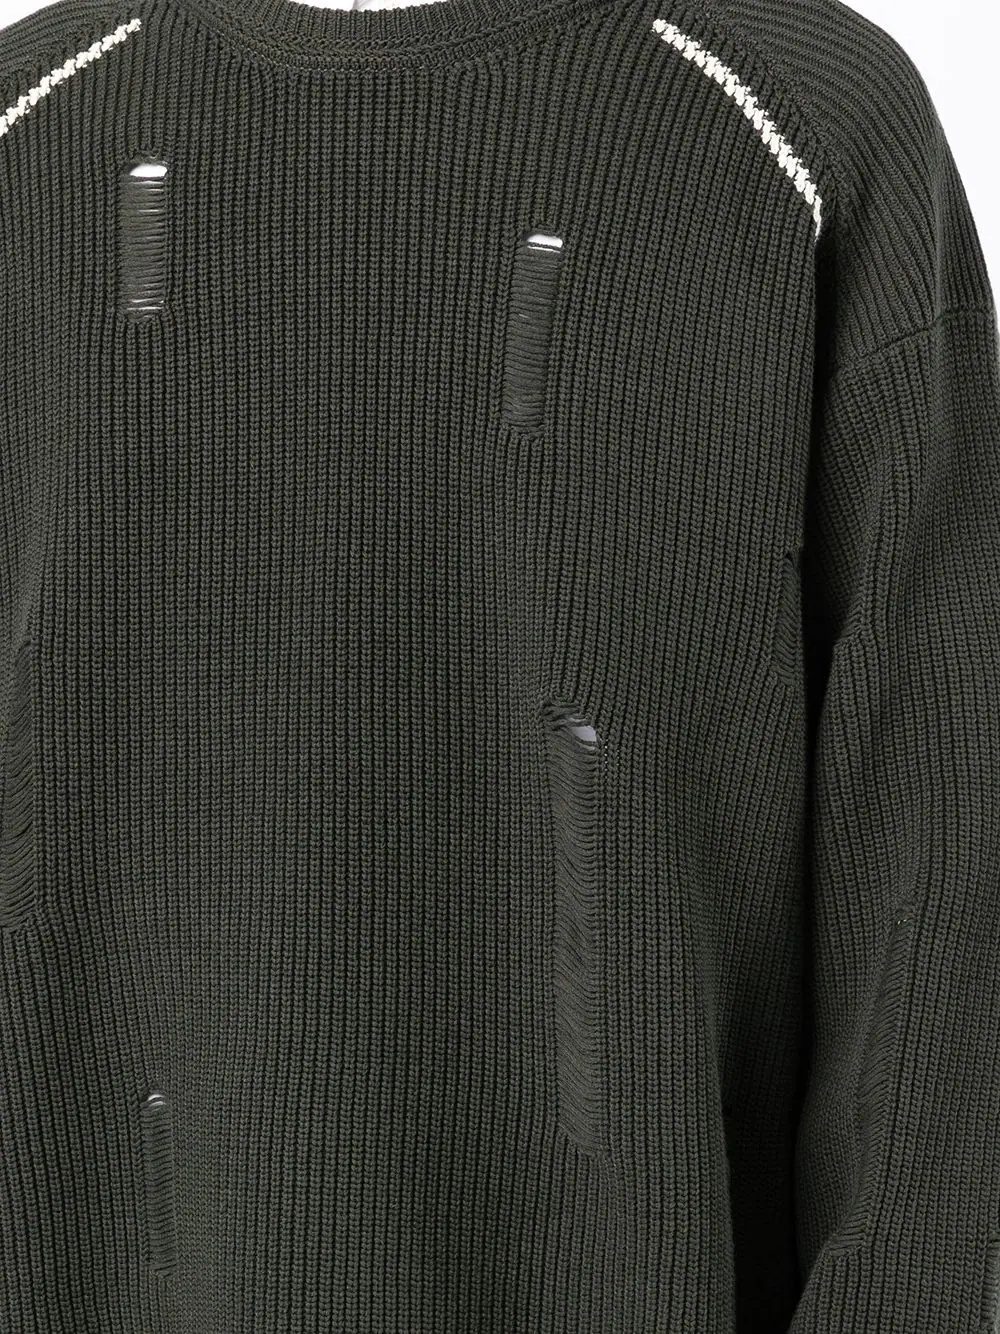 distressed crew-neck sweater - 5